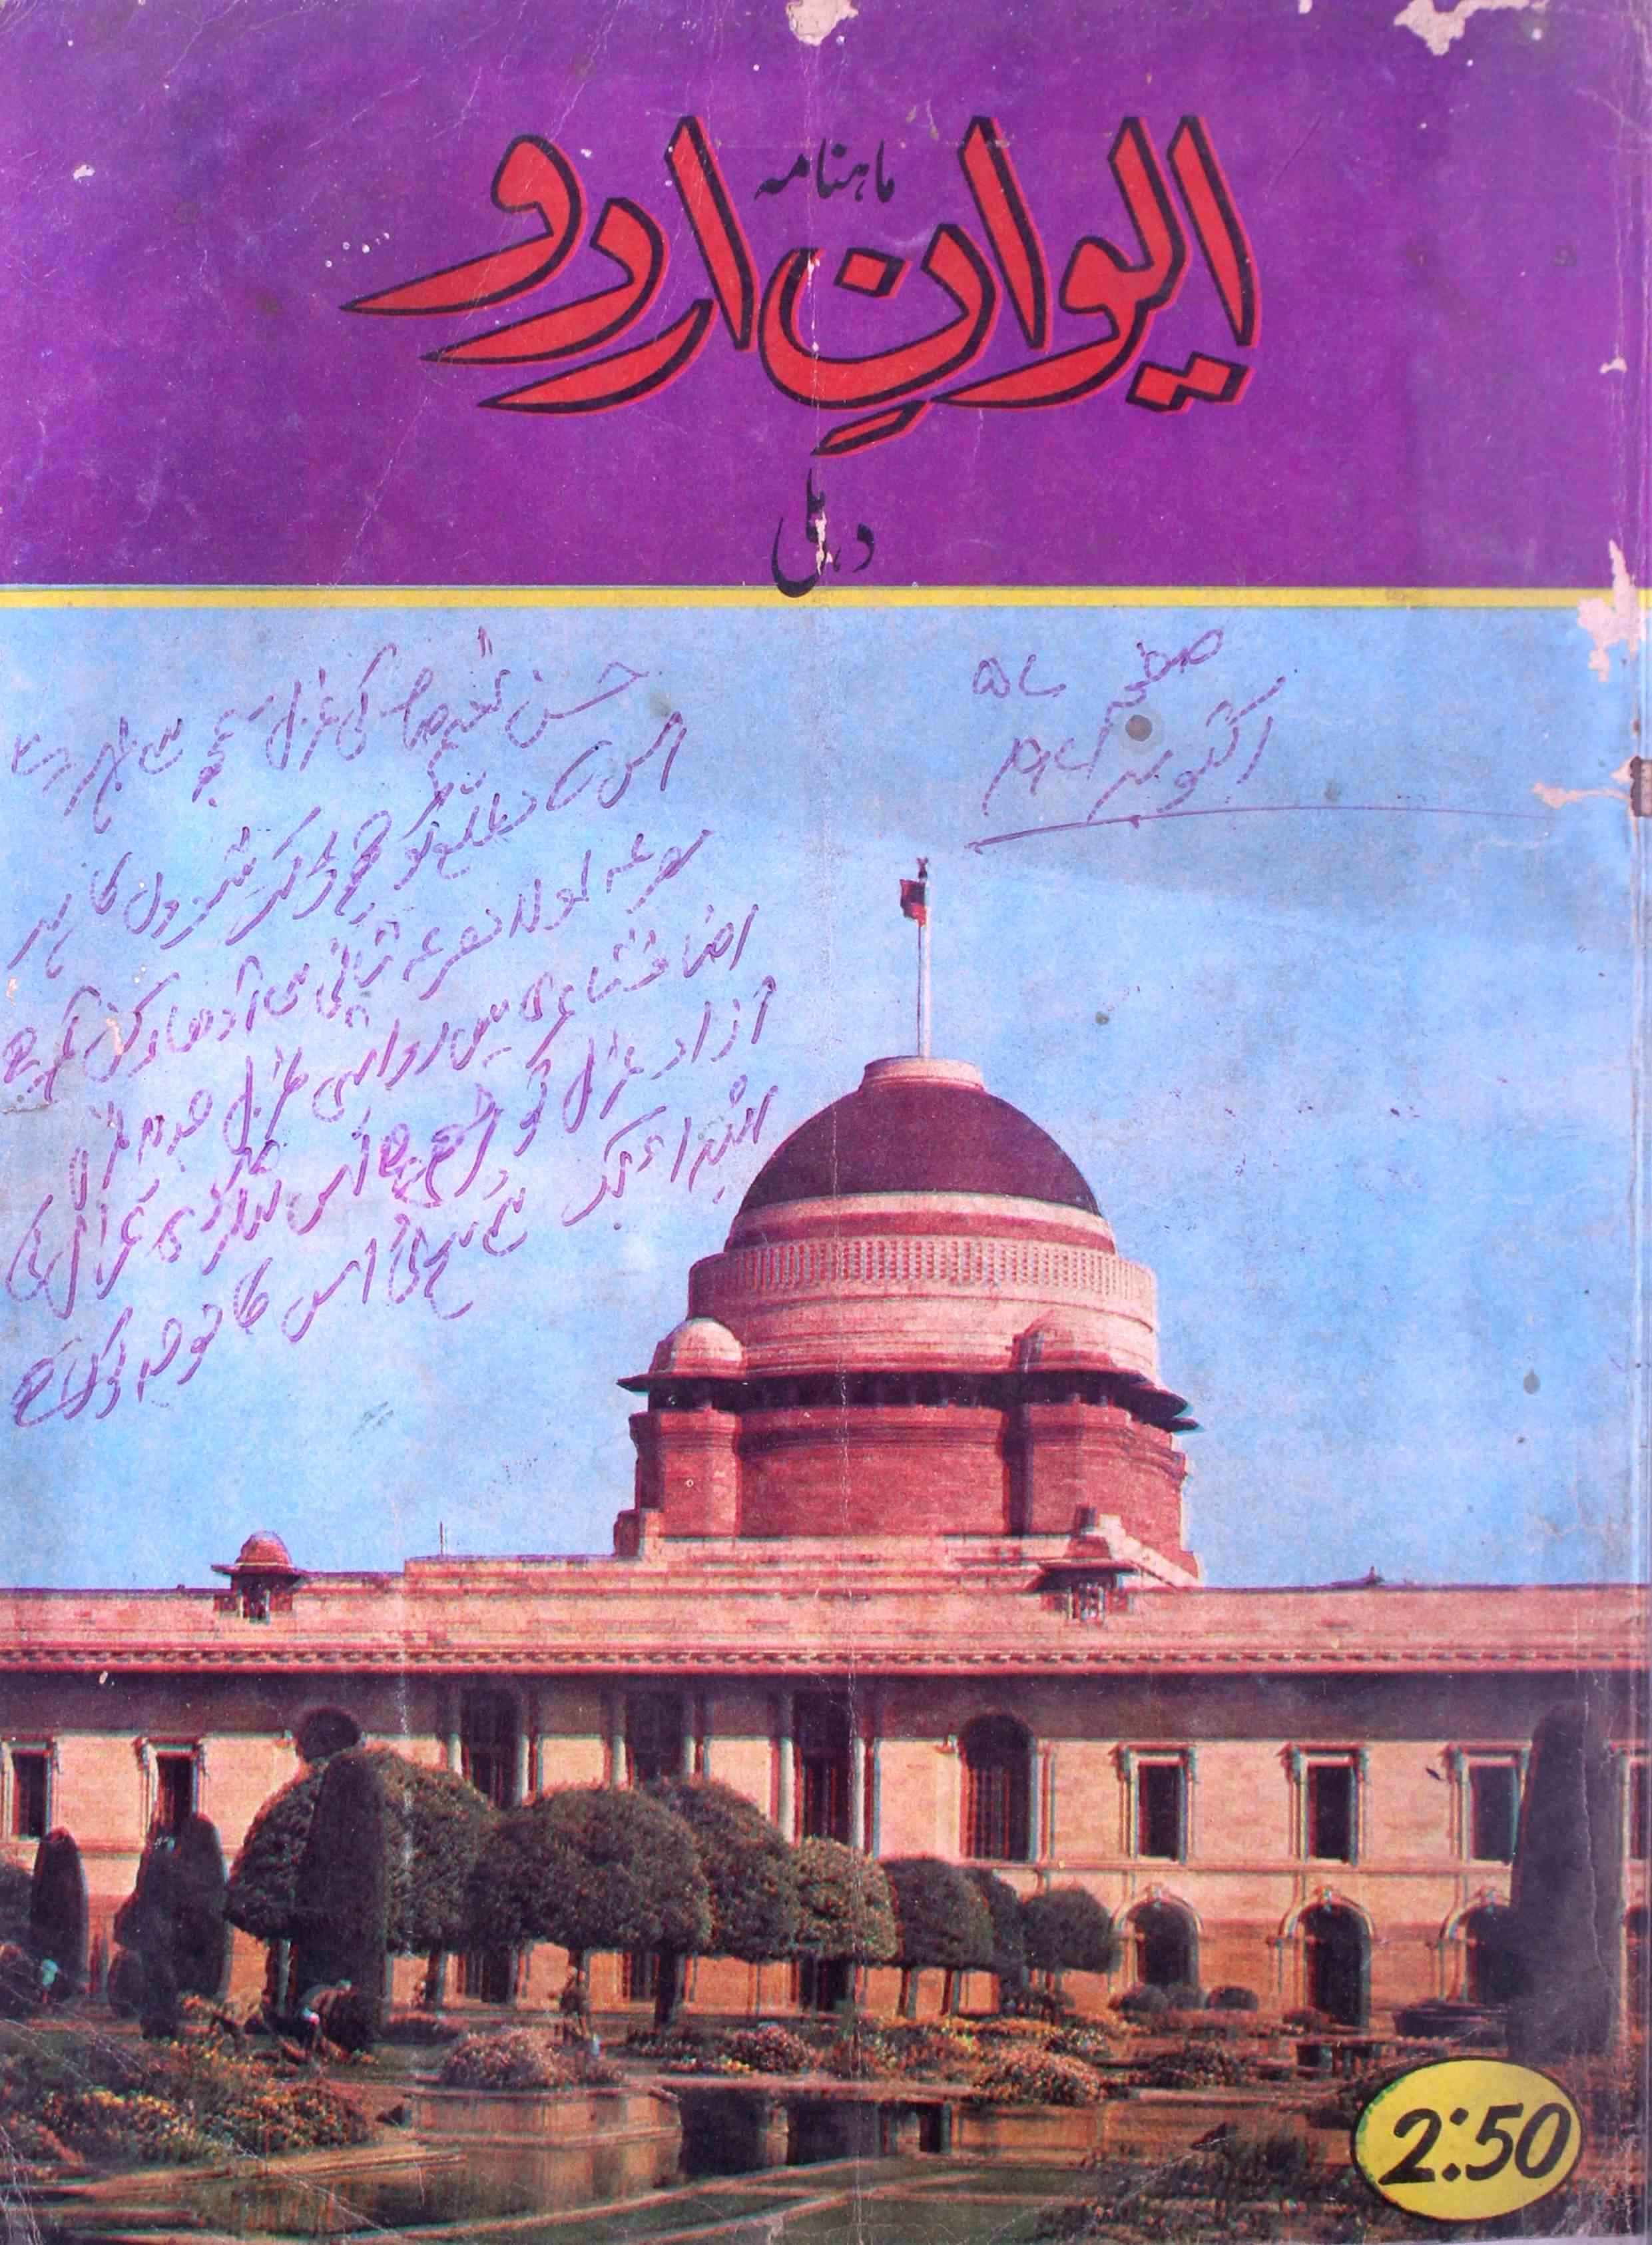 Aiwan-e-Urdu, Delhi